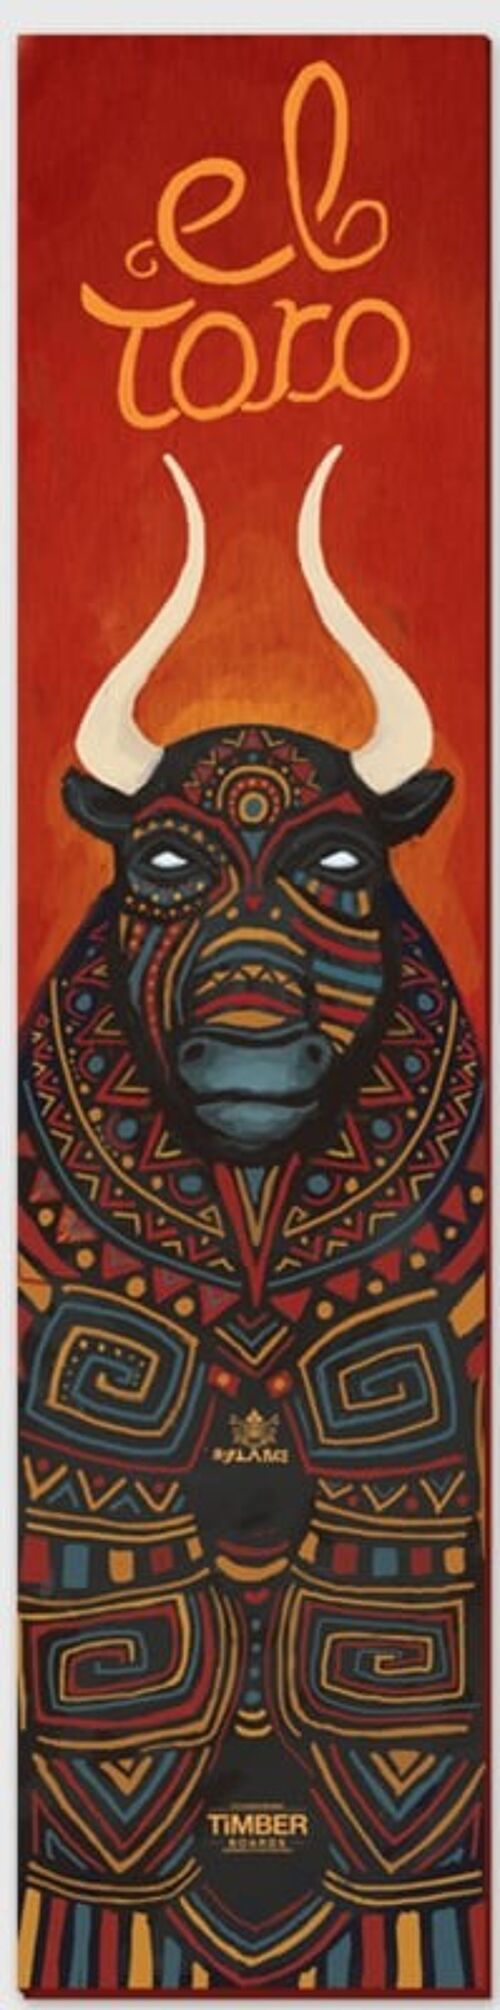 El Toro Canvas print - M 25 x 110 cm